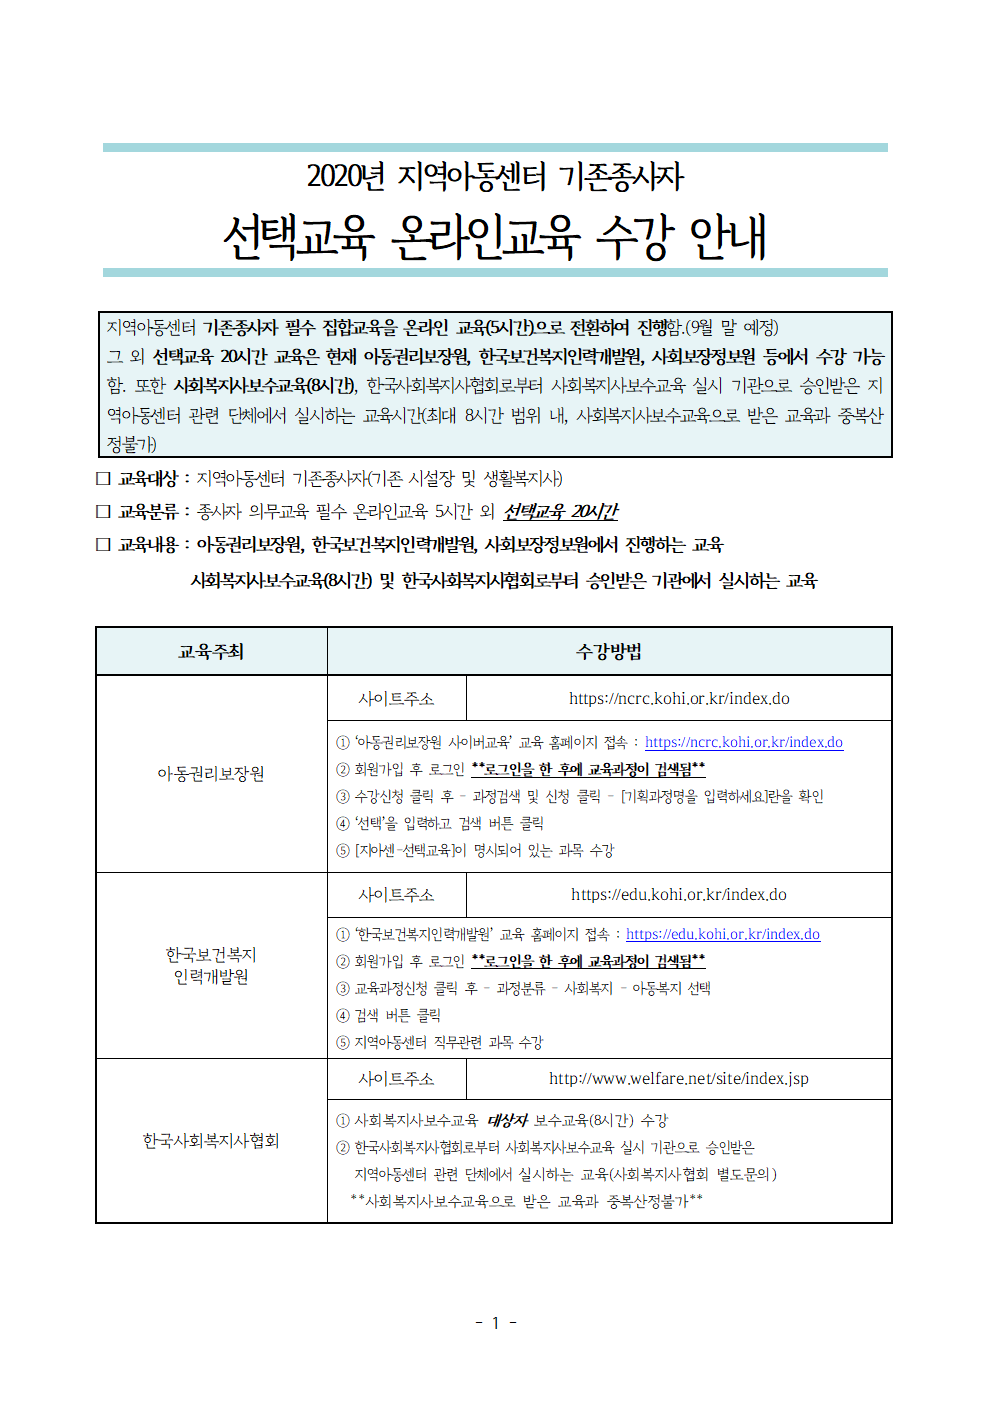 한국 사회 복지사 협회 온라인 교육 센터